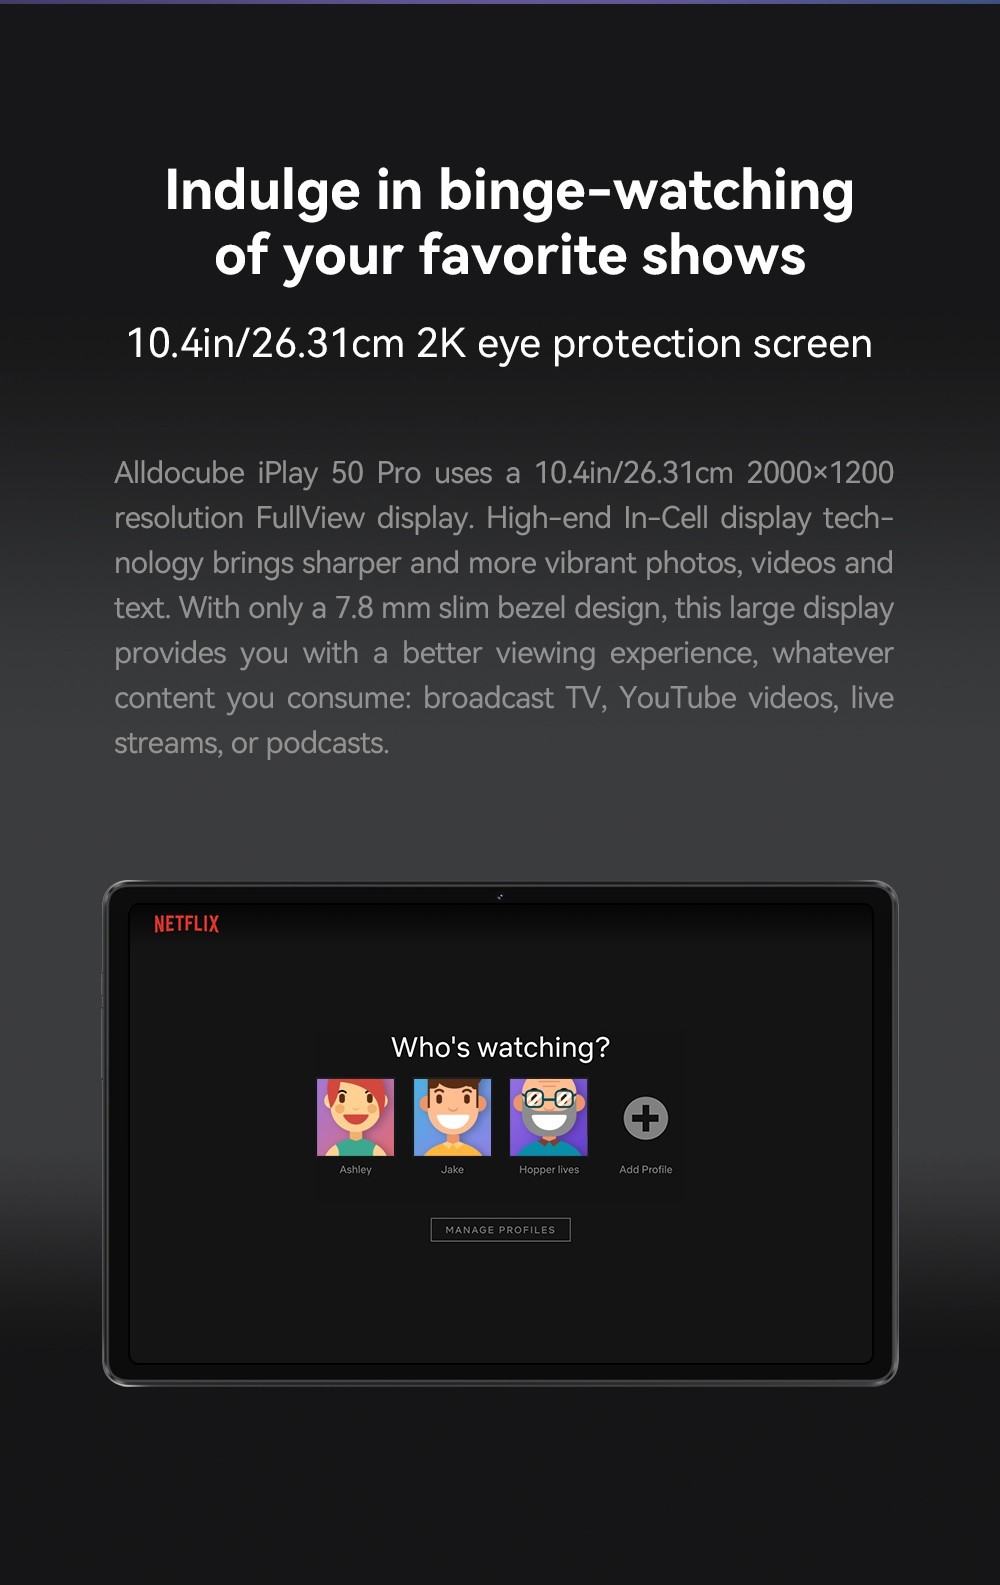 Tablet ALLDOCUBE iPlay 50 Pro